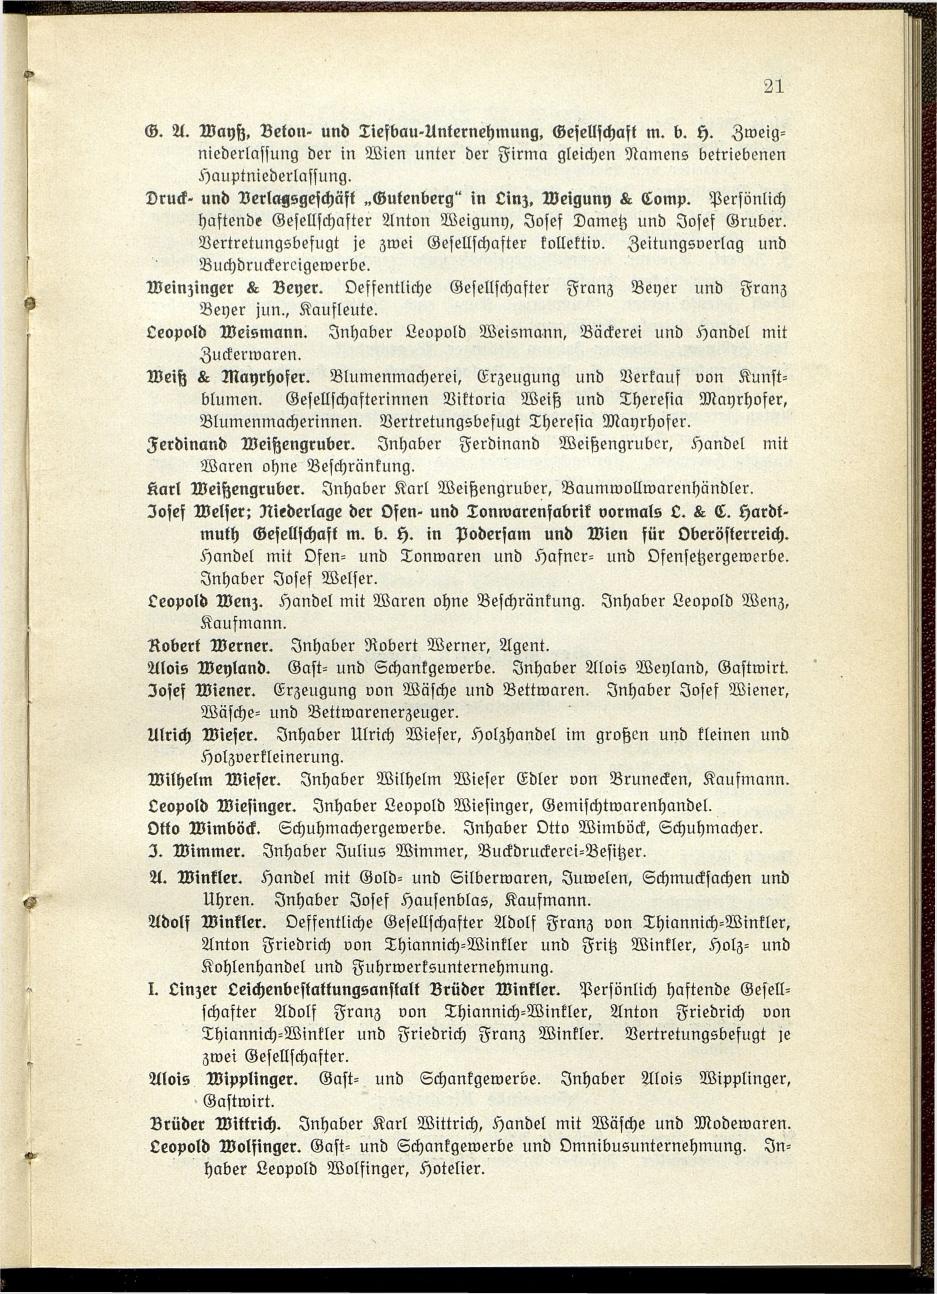 Verzeichnis der handelsgerichtlich protokollierten Firmen sowie der registrierten Erwerbs- und Wirtschafts-Genossenschaften in Oberösterreich 1914 - Page 23